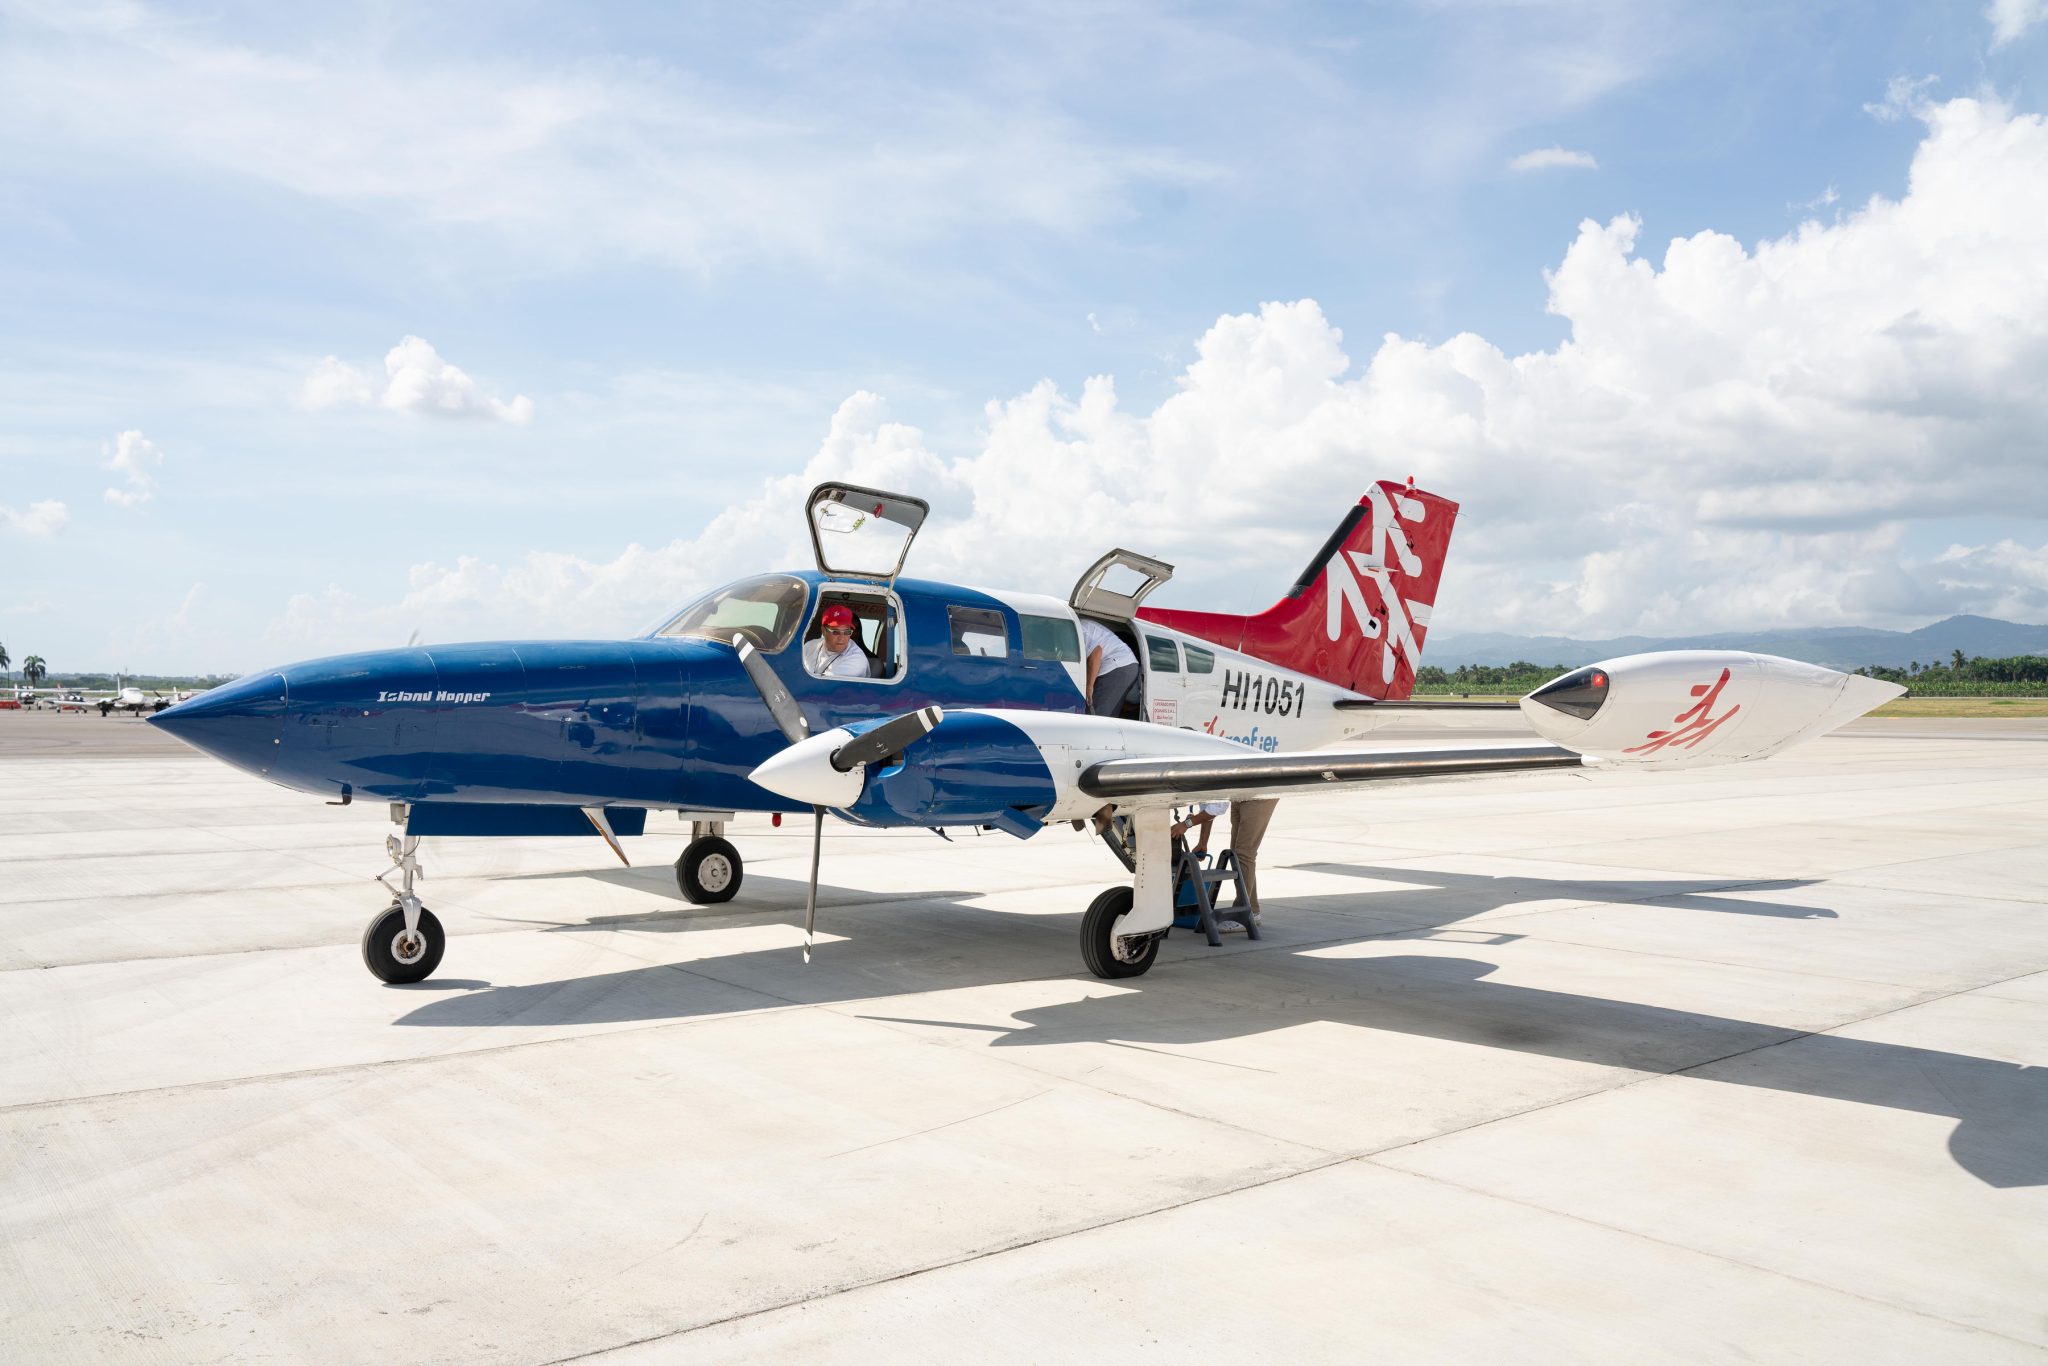 Reef Jet inaugura ruta aérea entre Punta Cana y Santiago, fortaleciendo la conectividad turística en República Dominicana